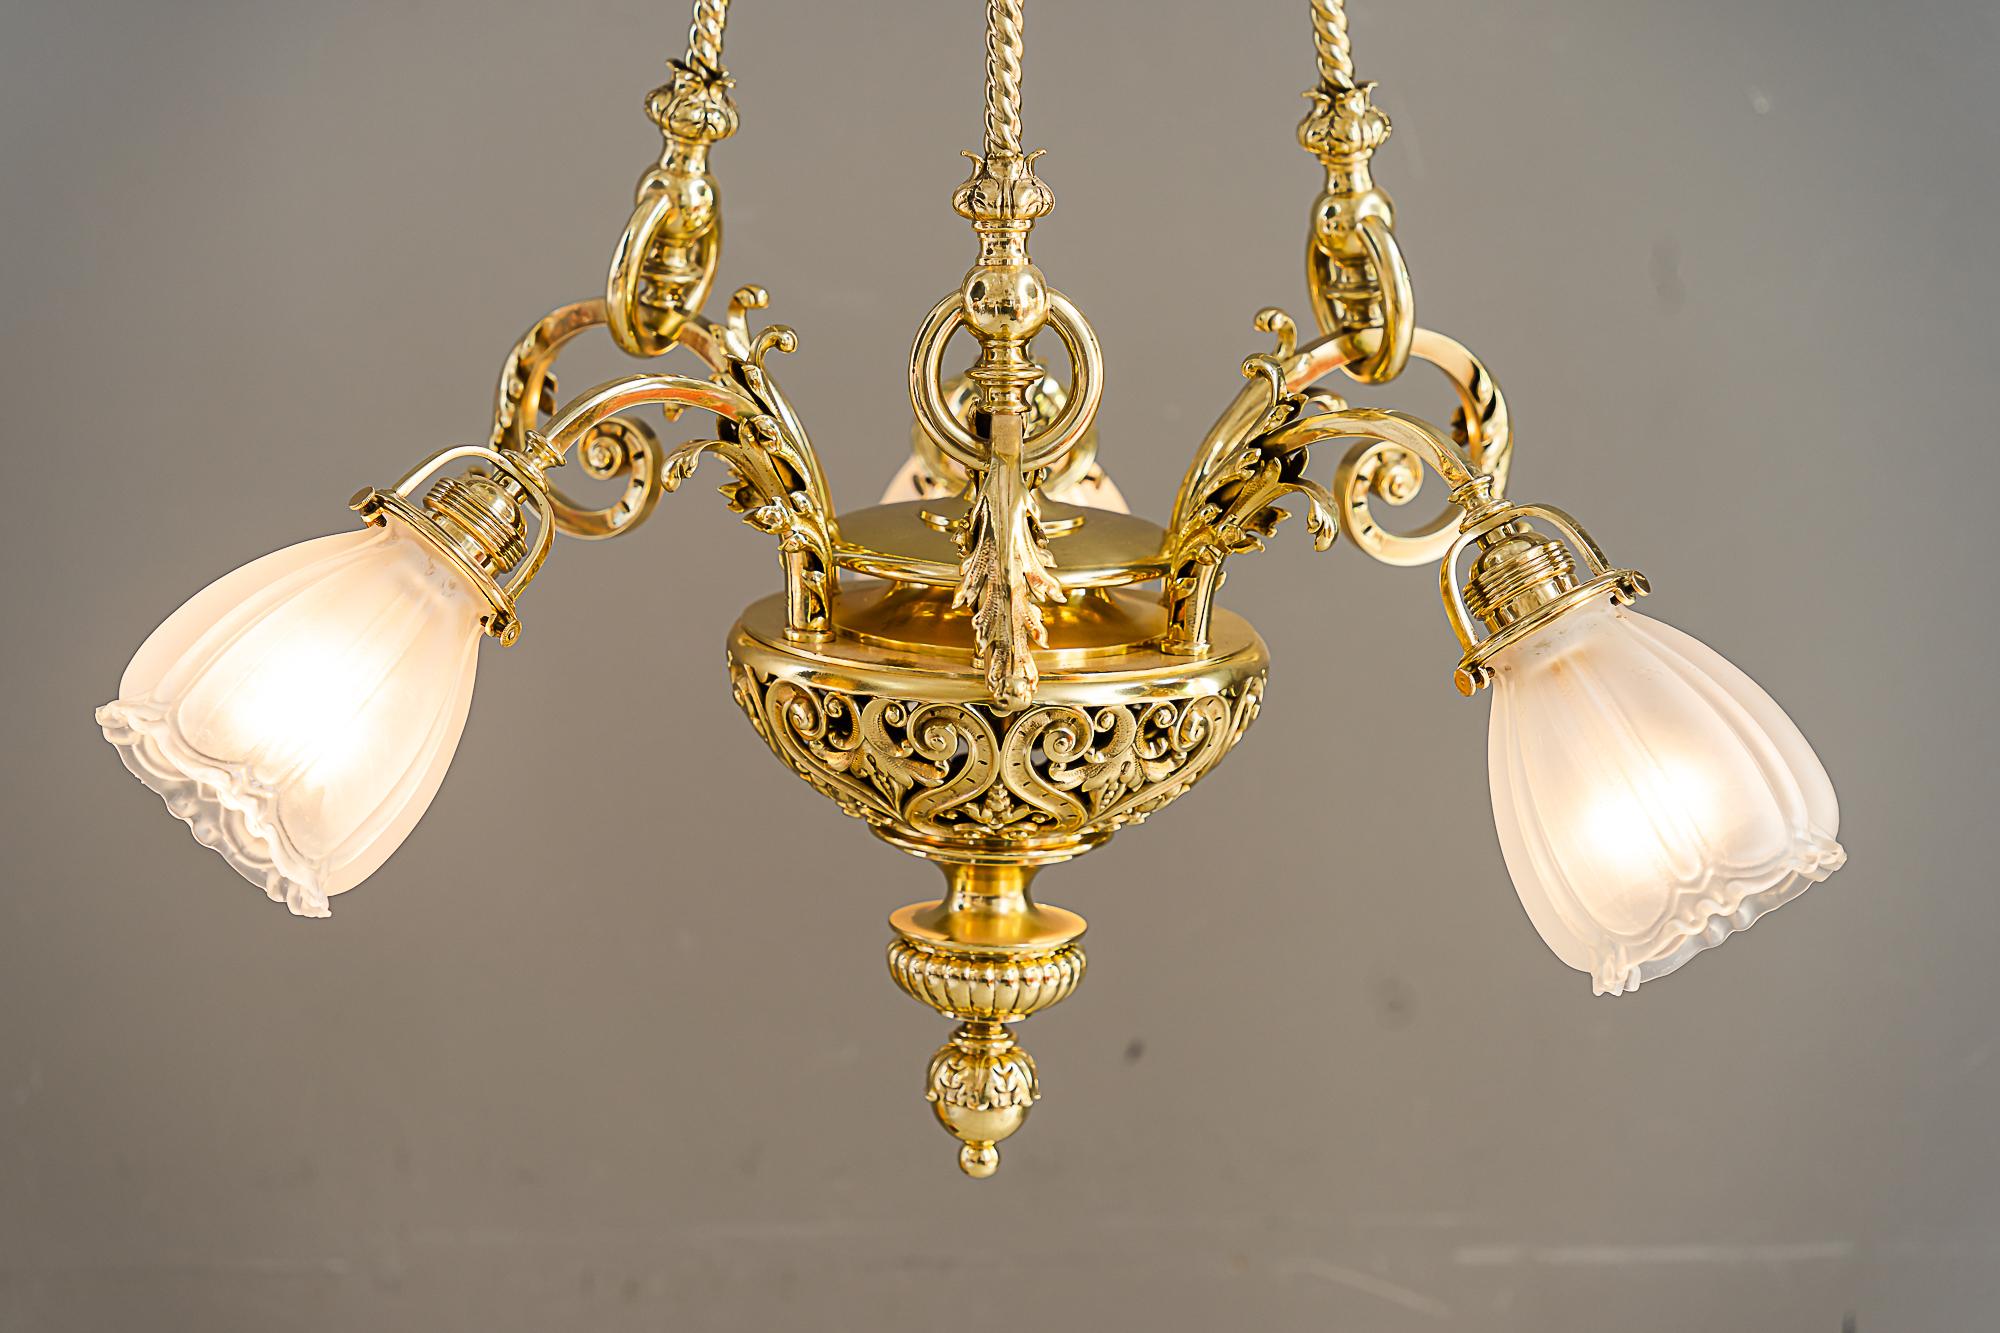 Historic chandelier vienna around 1890s with original antique glass shades For Sale 9